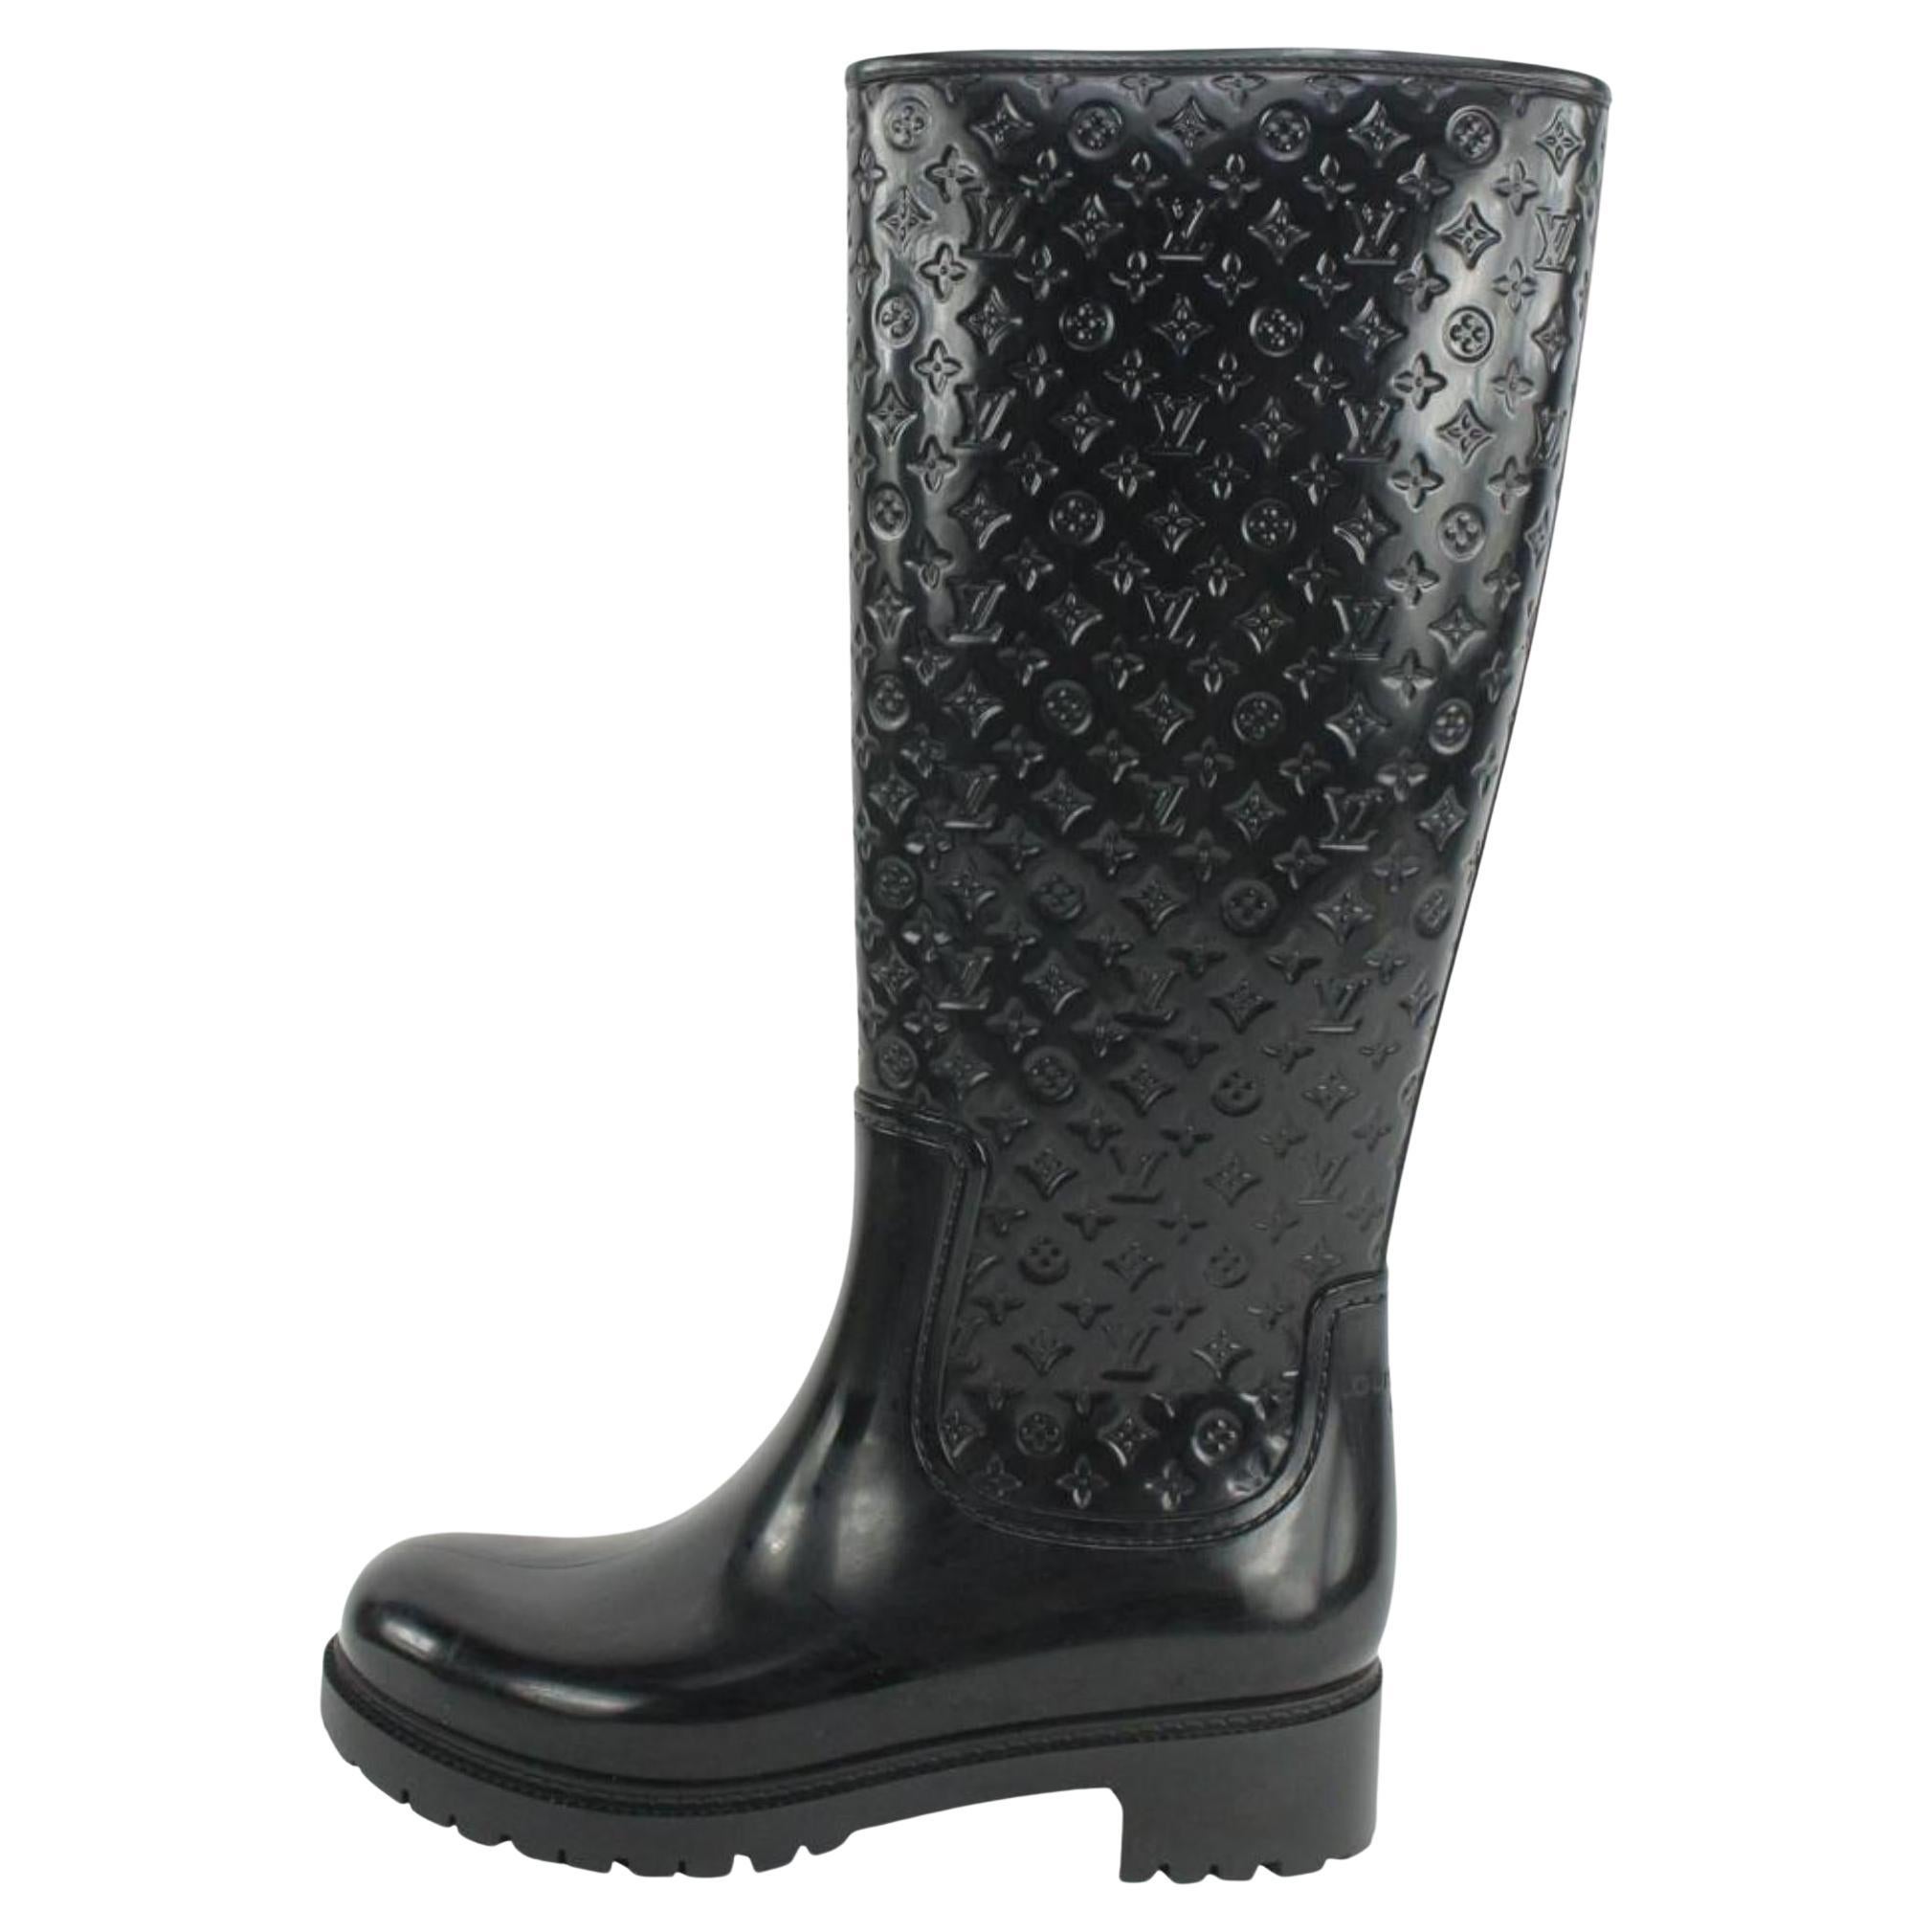 Louis Vuitton Black Patent Leather Fur Trim Booties Shoes Size